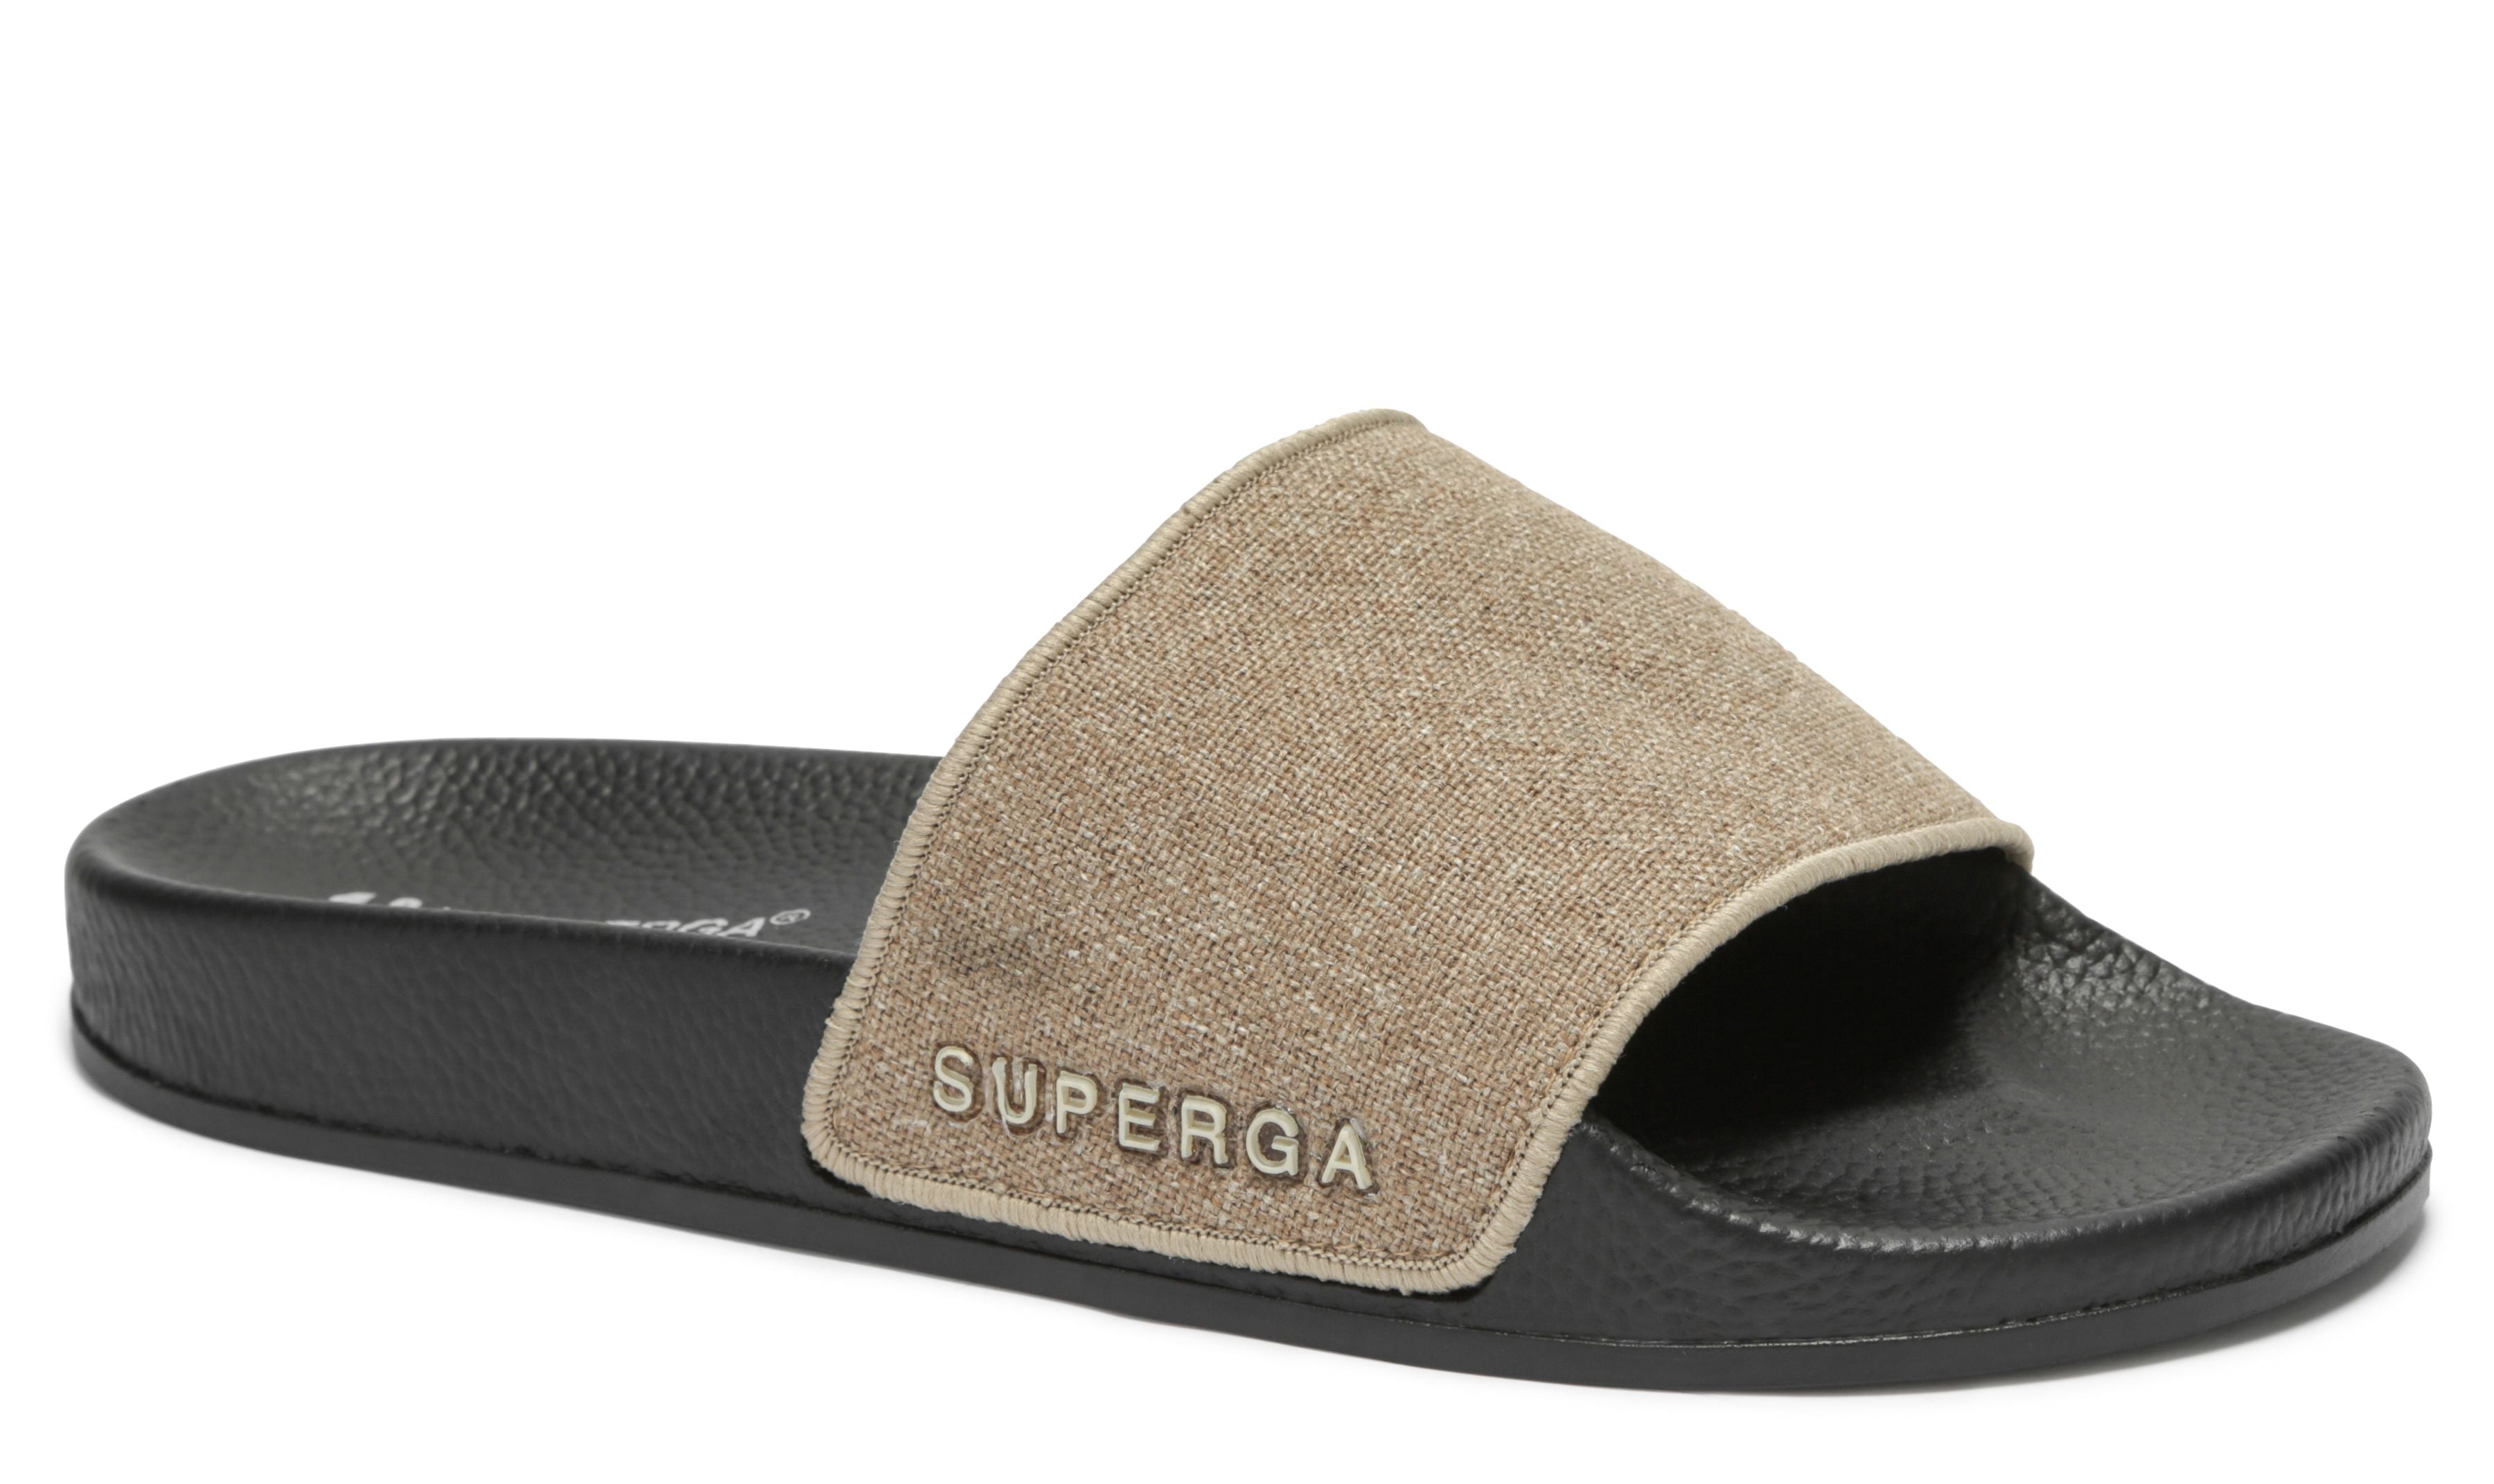 Buy > superga linen slides > in stock